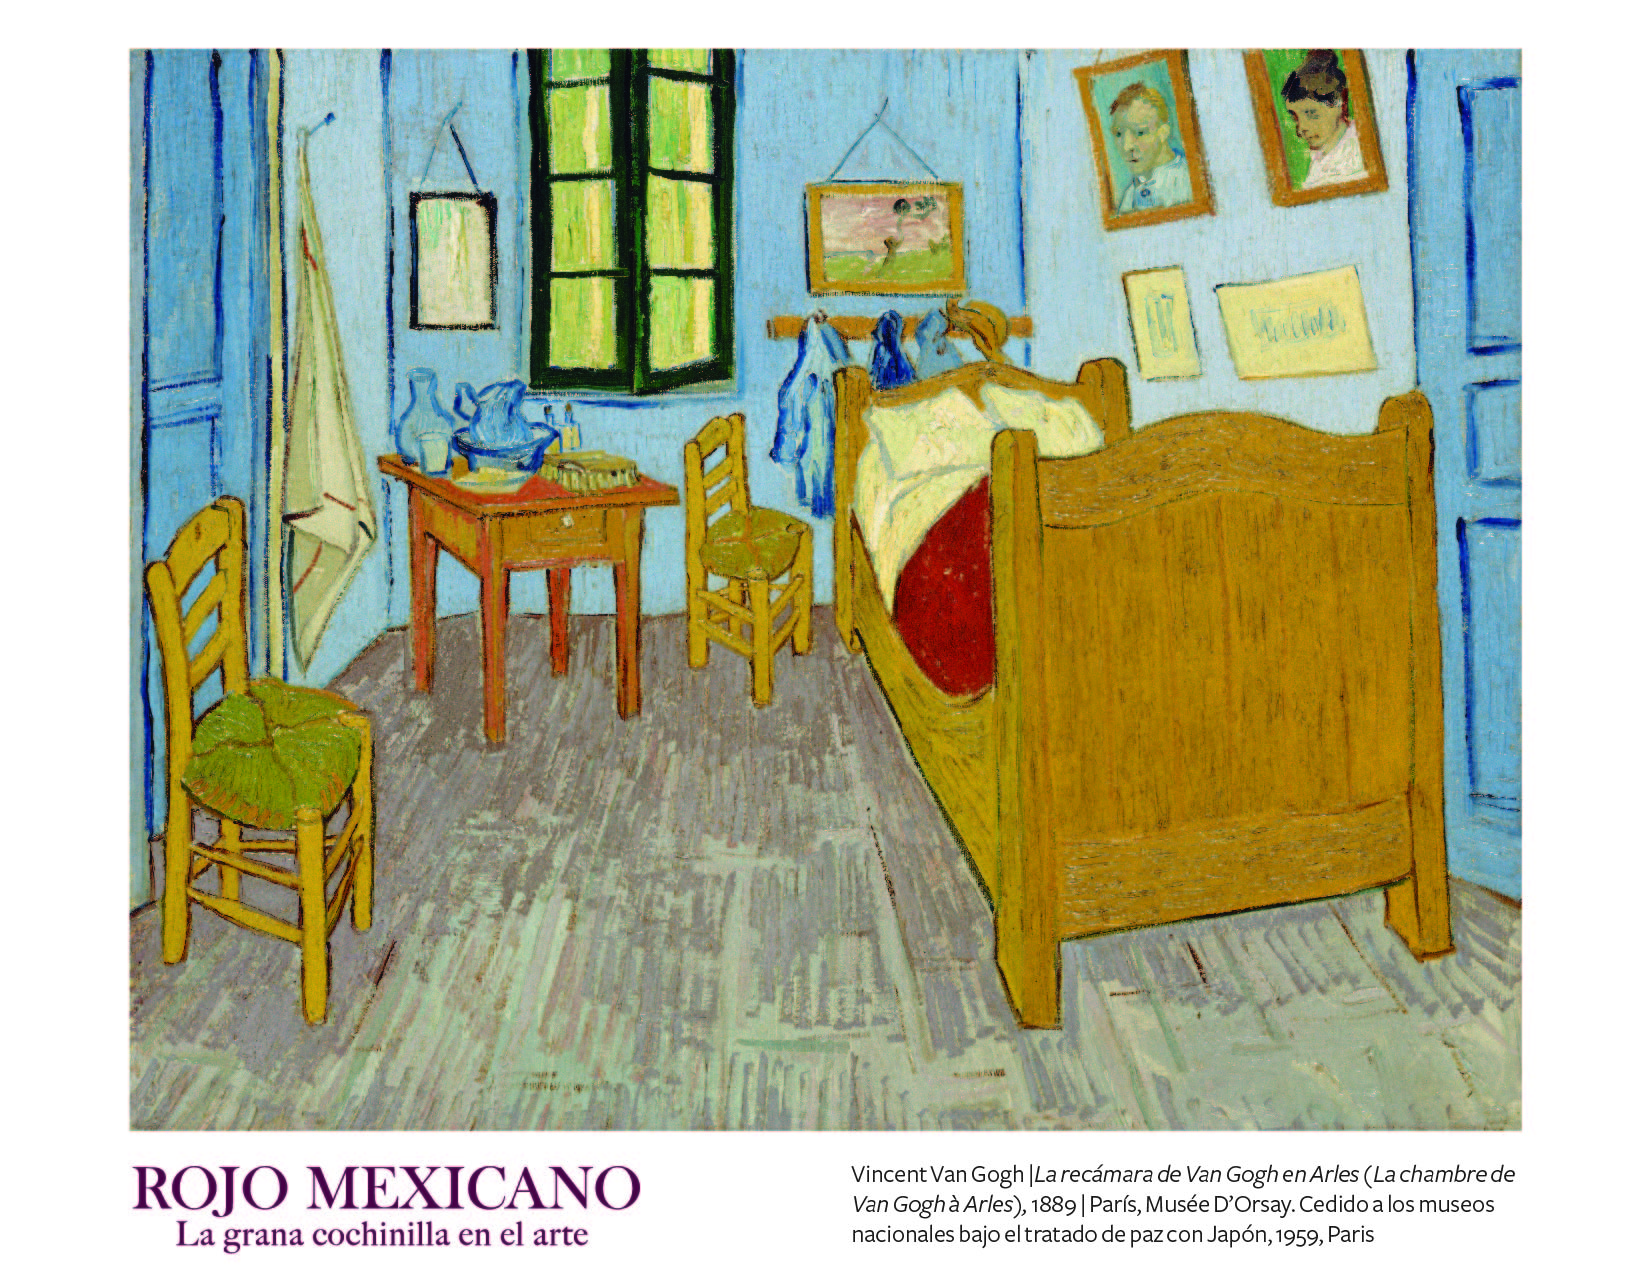 Imagen de la exposición Rojo mexicano. La grana cochinilla en el arte, en el Museo del Palacio de Bellas Artes